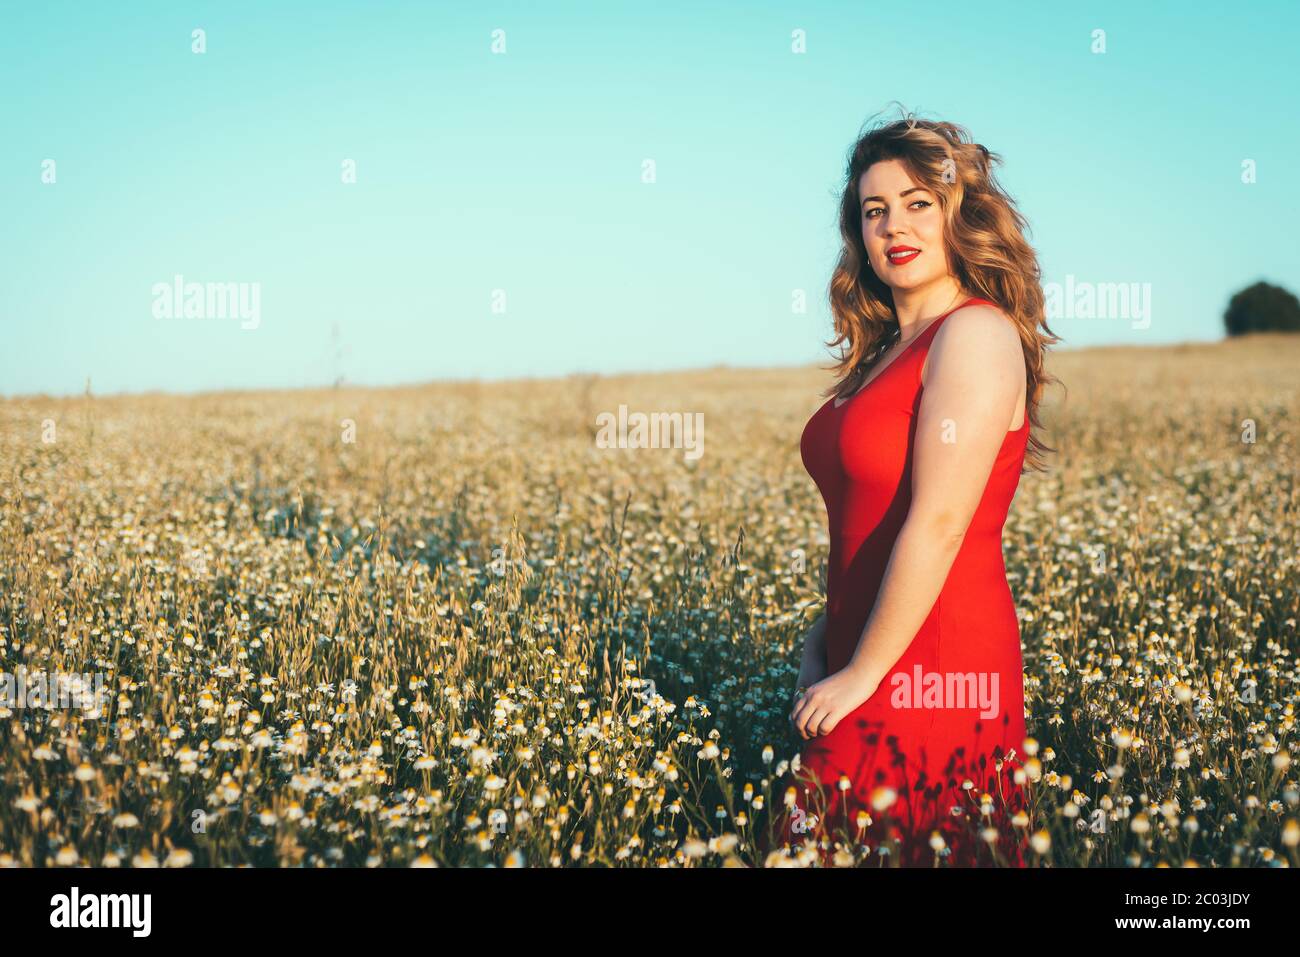 donna in abito rosso che gode di libertà in un campo di margherite Foto Stock